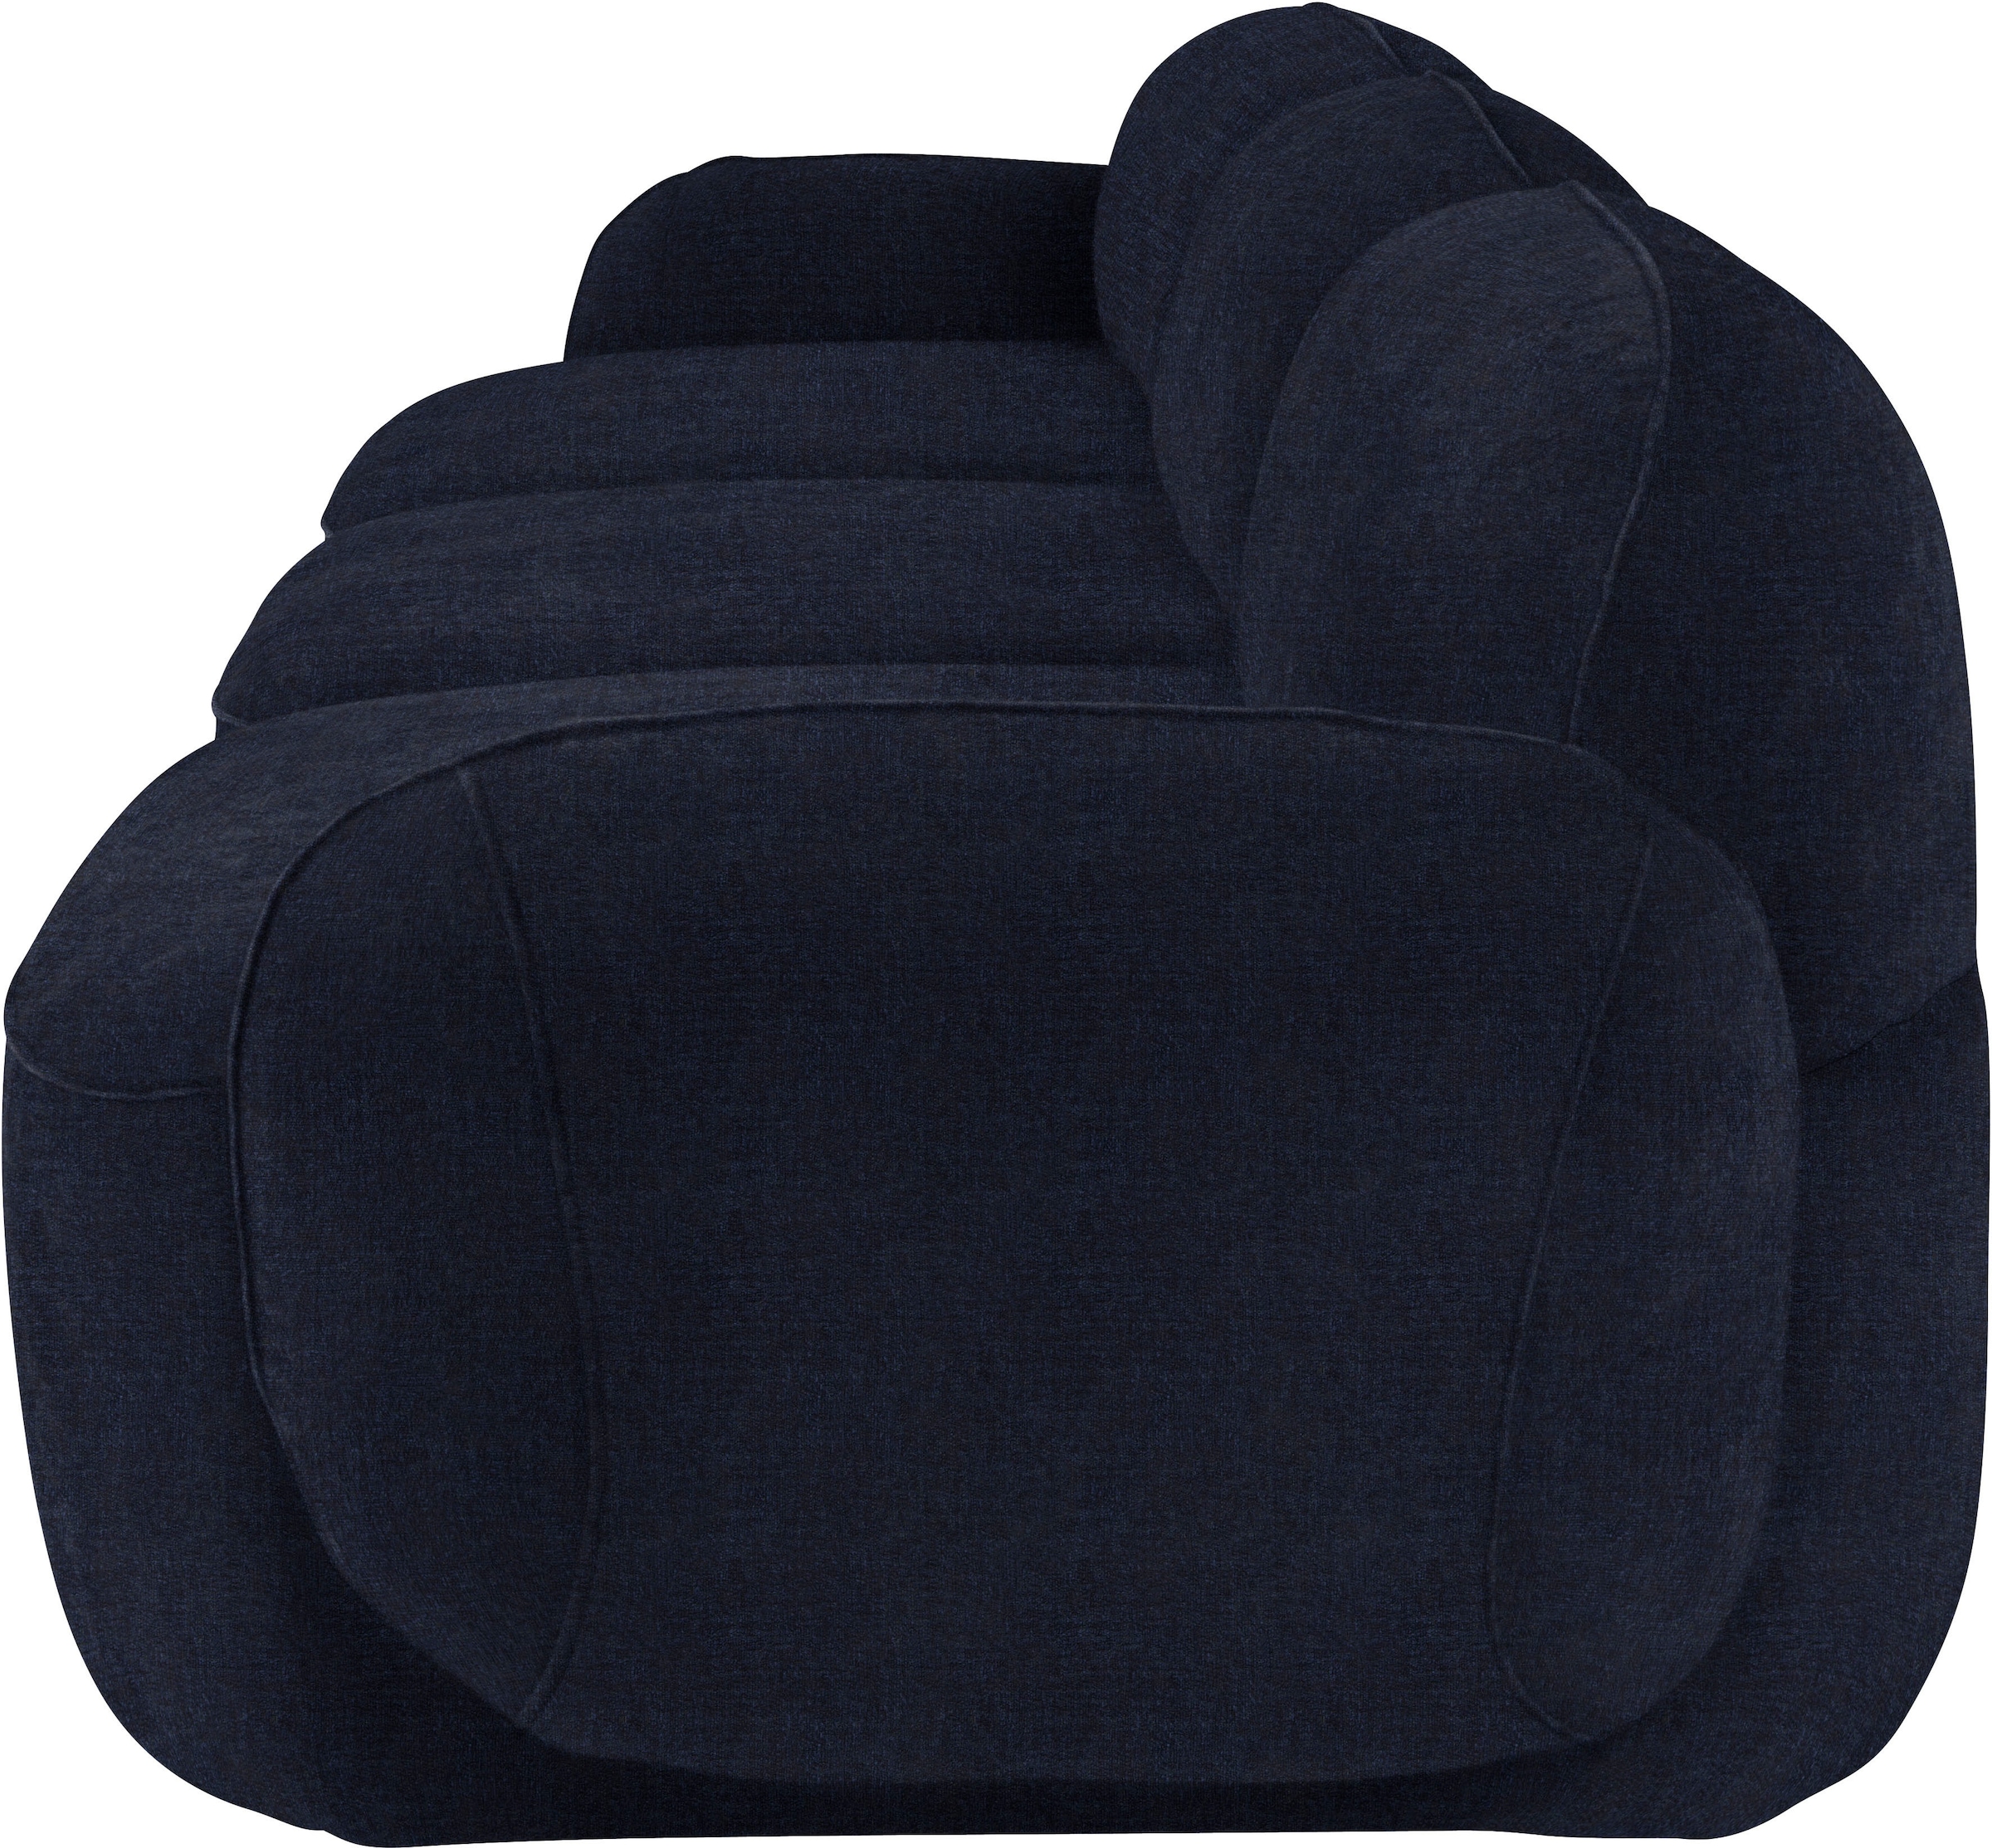 furninova 3,5-Sitzer »Bubble«, komfortabel durch Memoryschaum, im skandinavischen Design